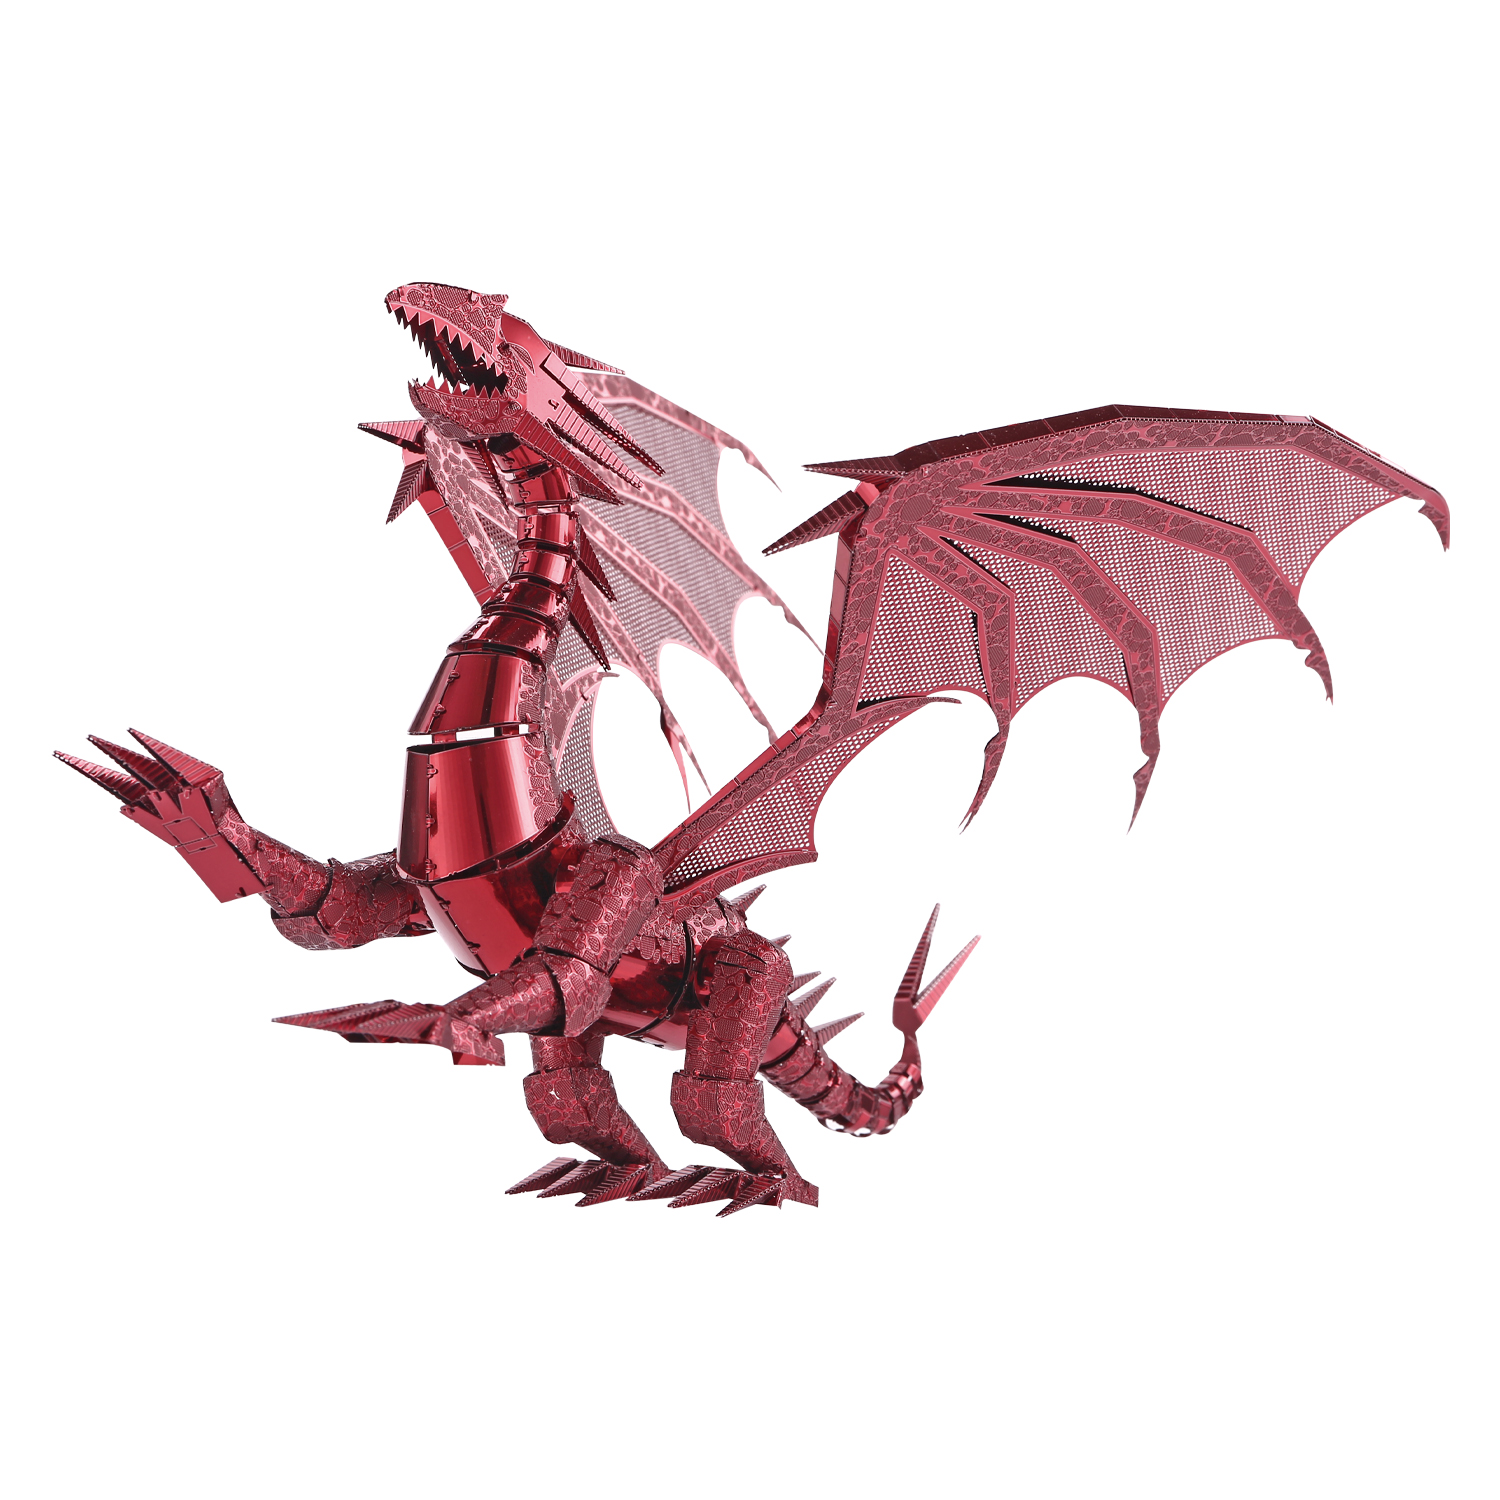 Red Dragon Metal Earth Premium Series